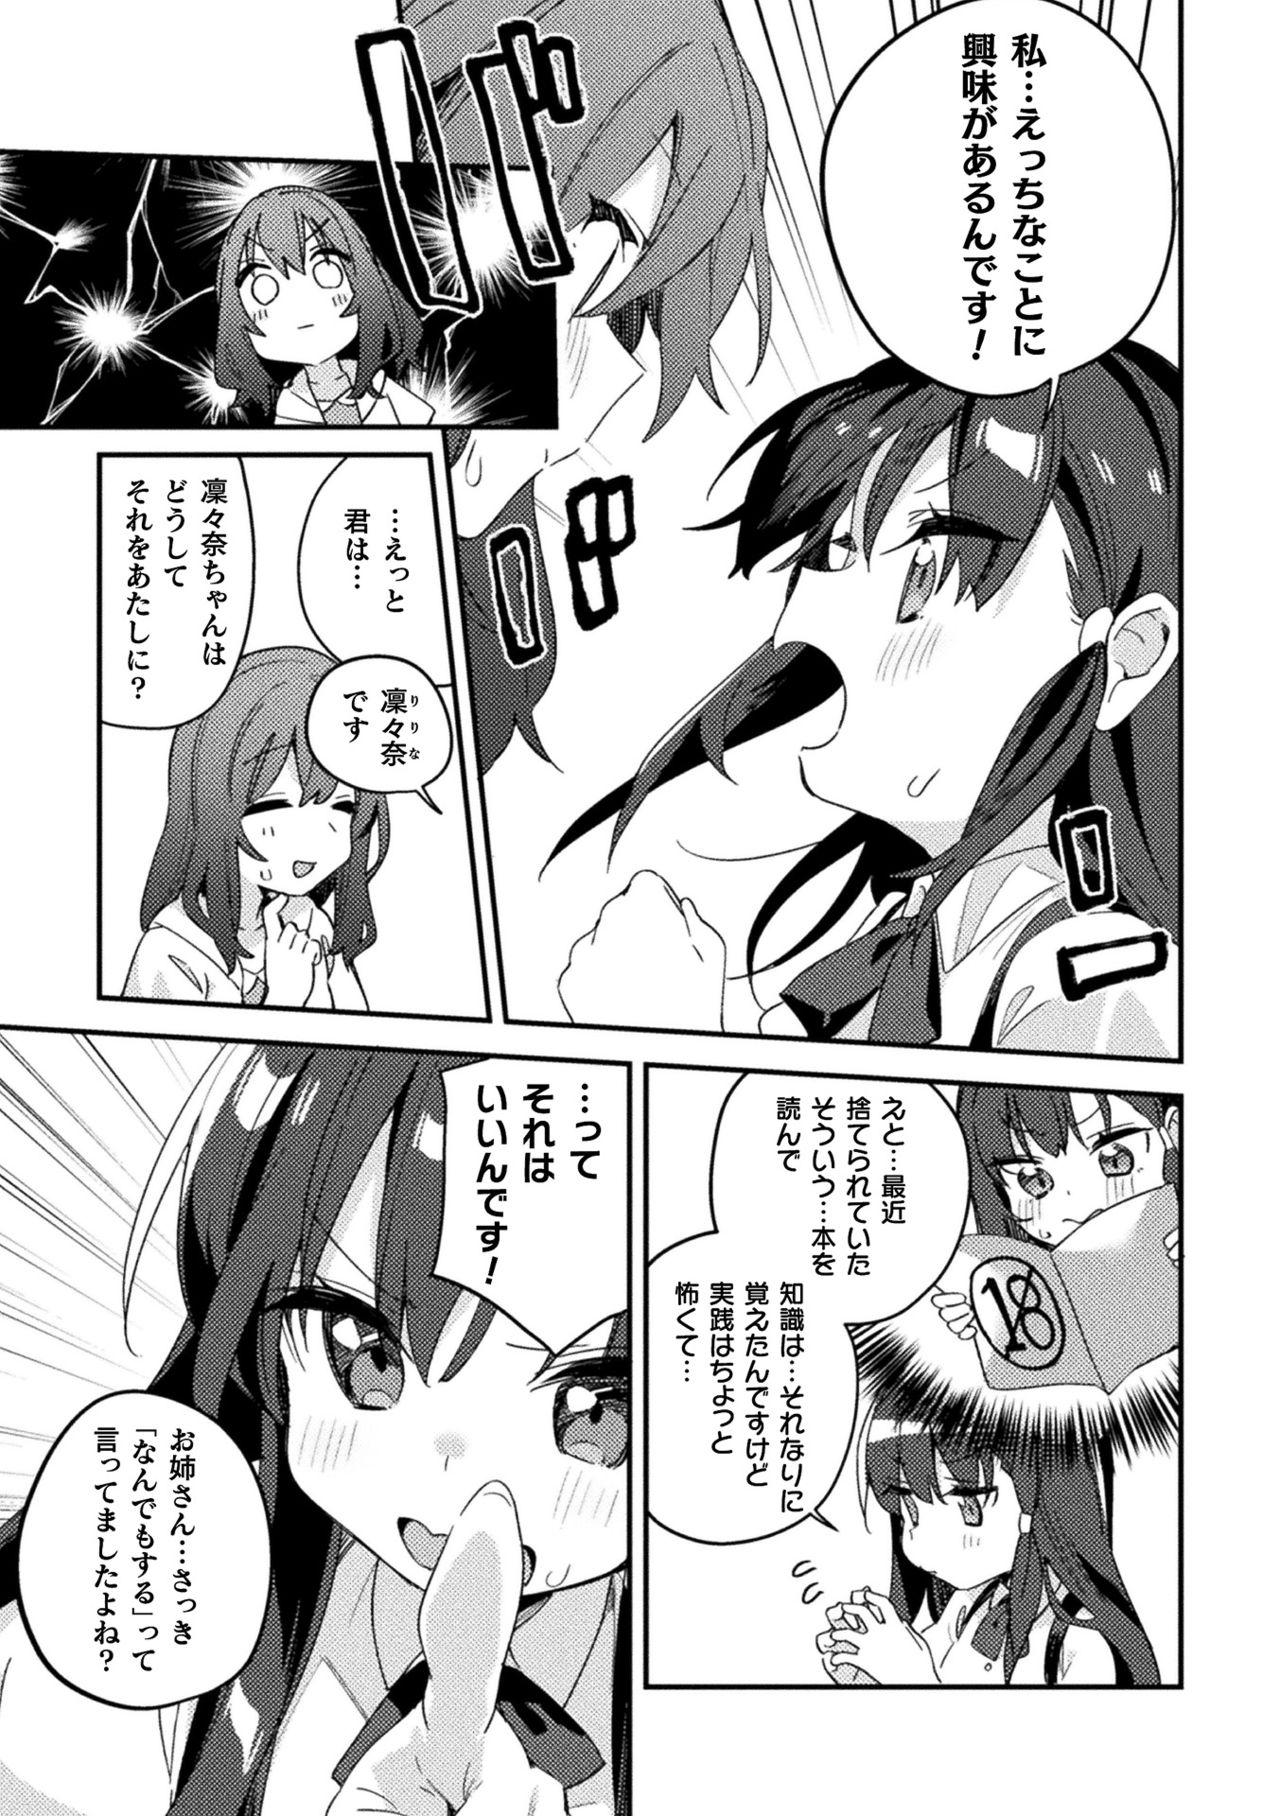 Fist 2D Comic Magazine Mesugaki vs Yasashii Onee-san Vol. 2 Baile - Page 7